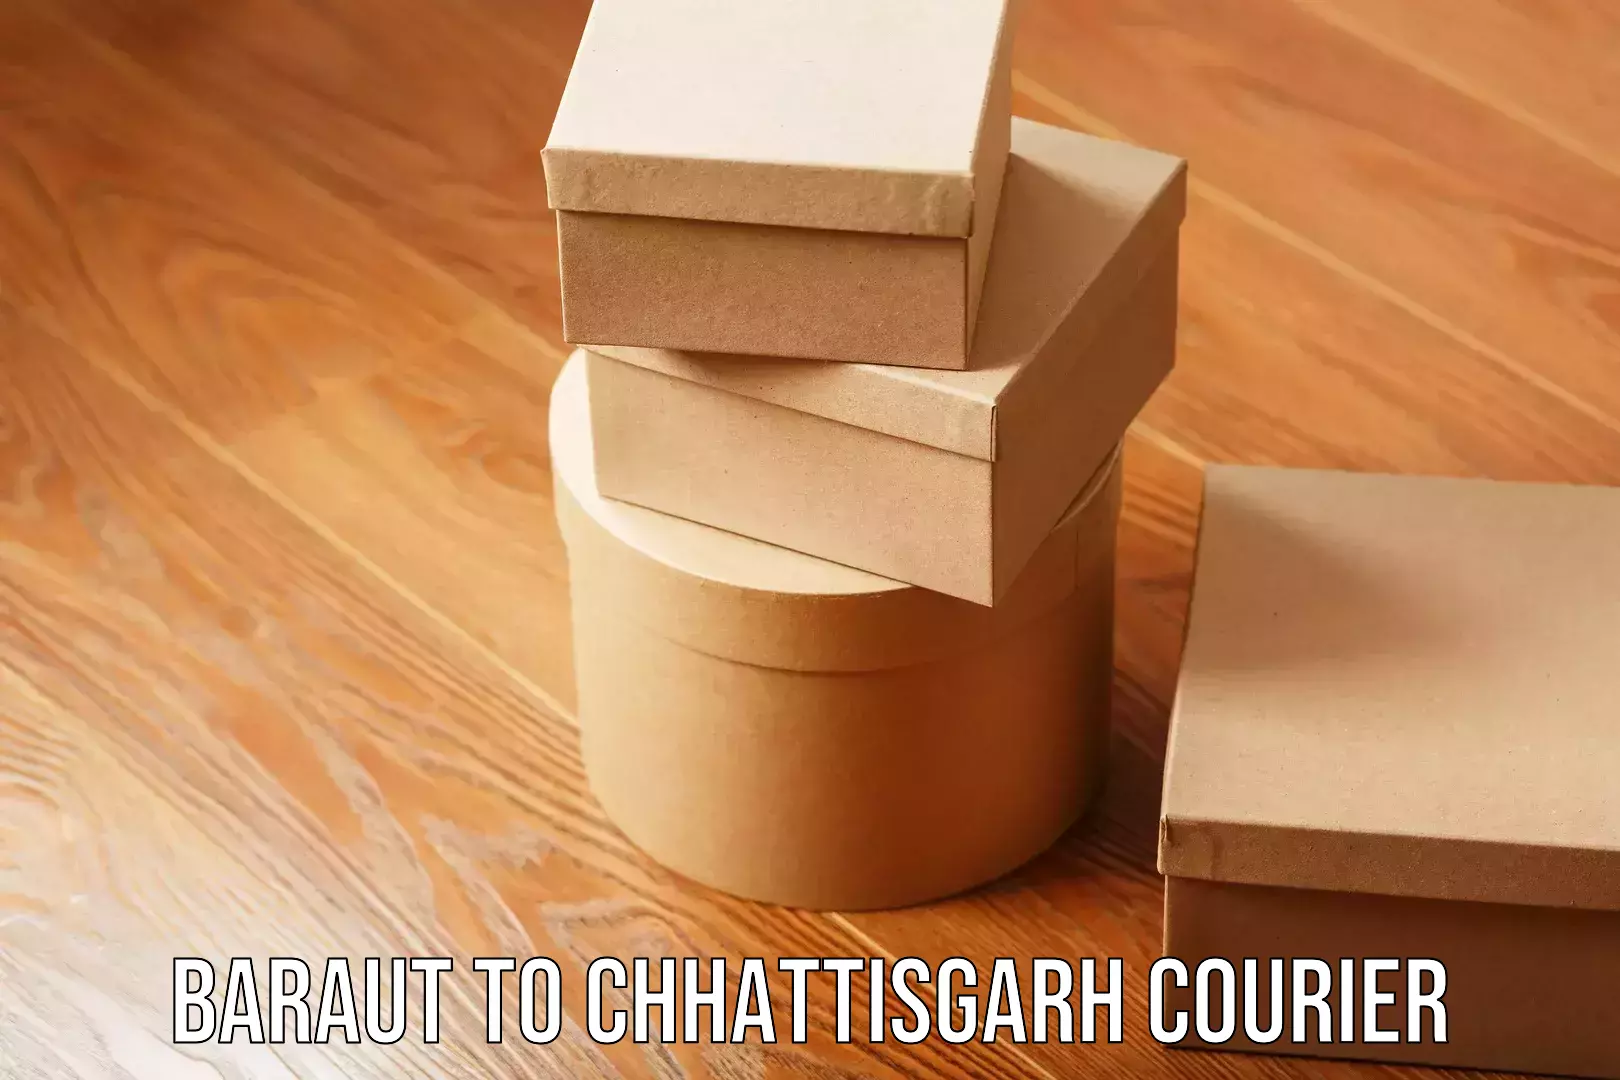 Digital courier platforms Baraut to Chhattisgarh